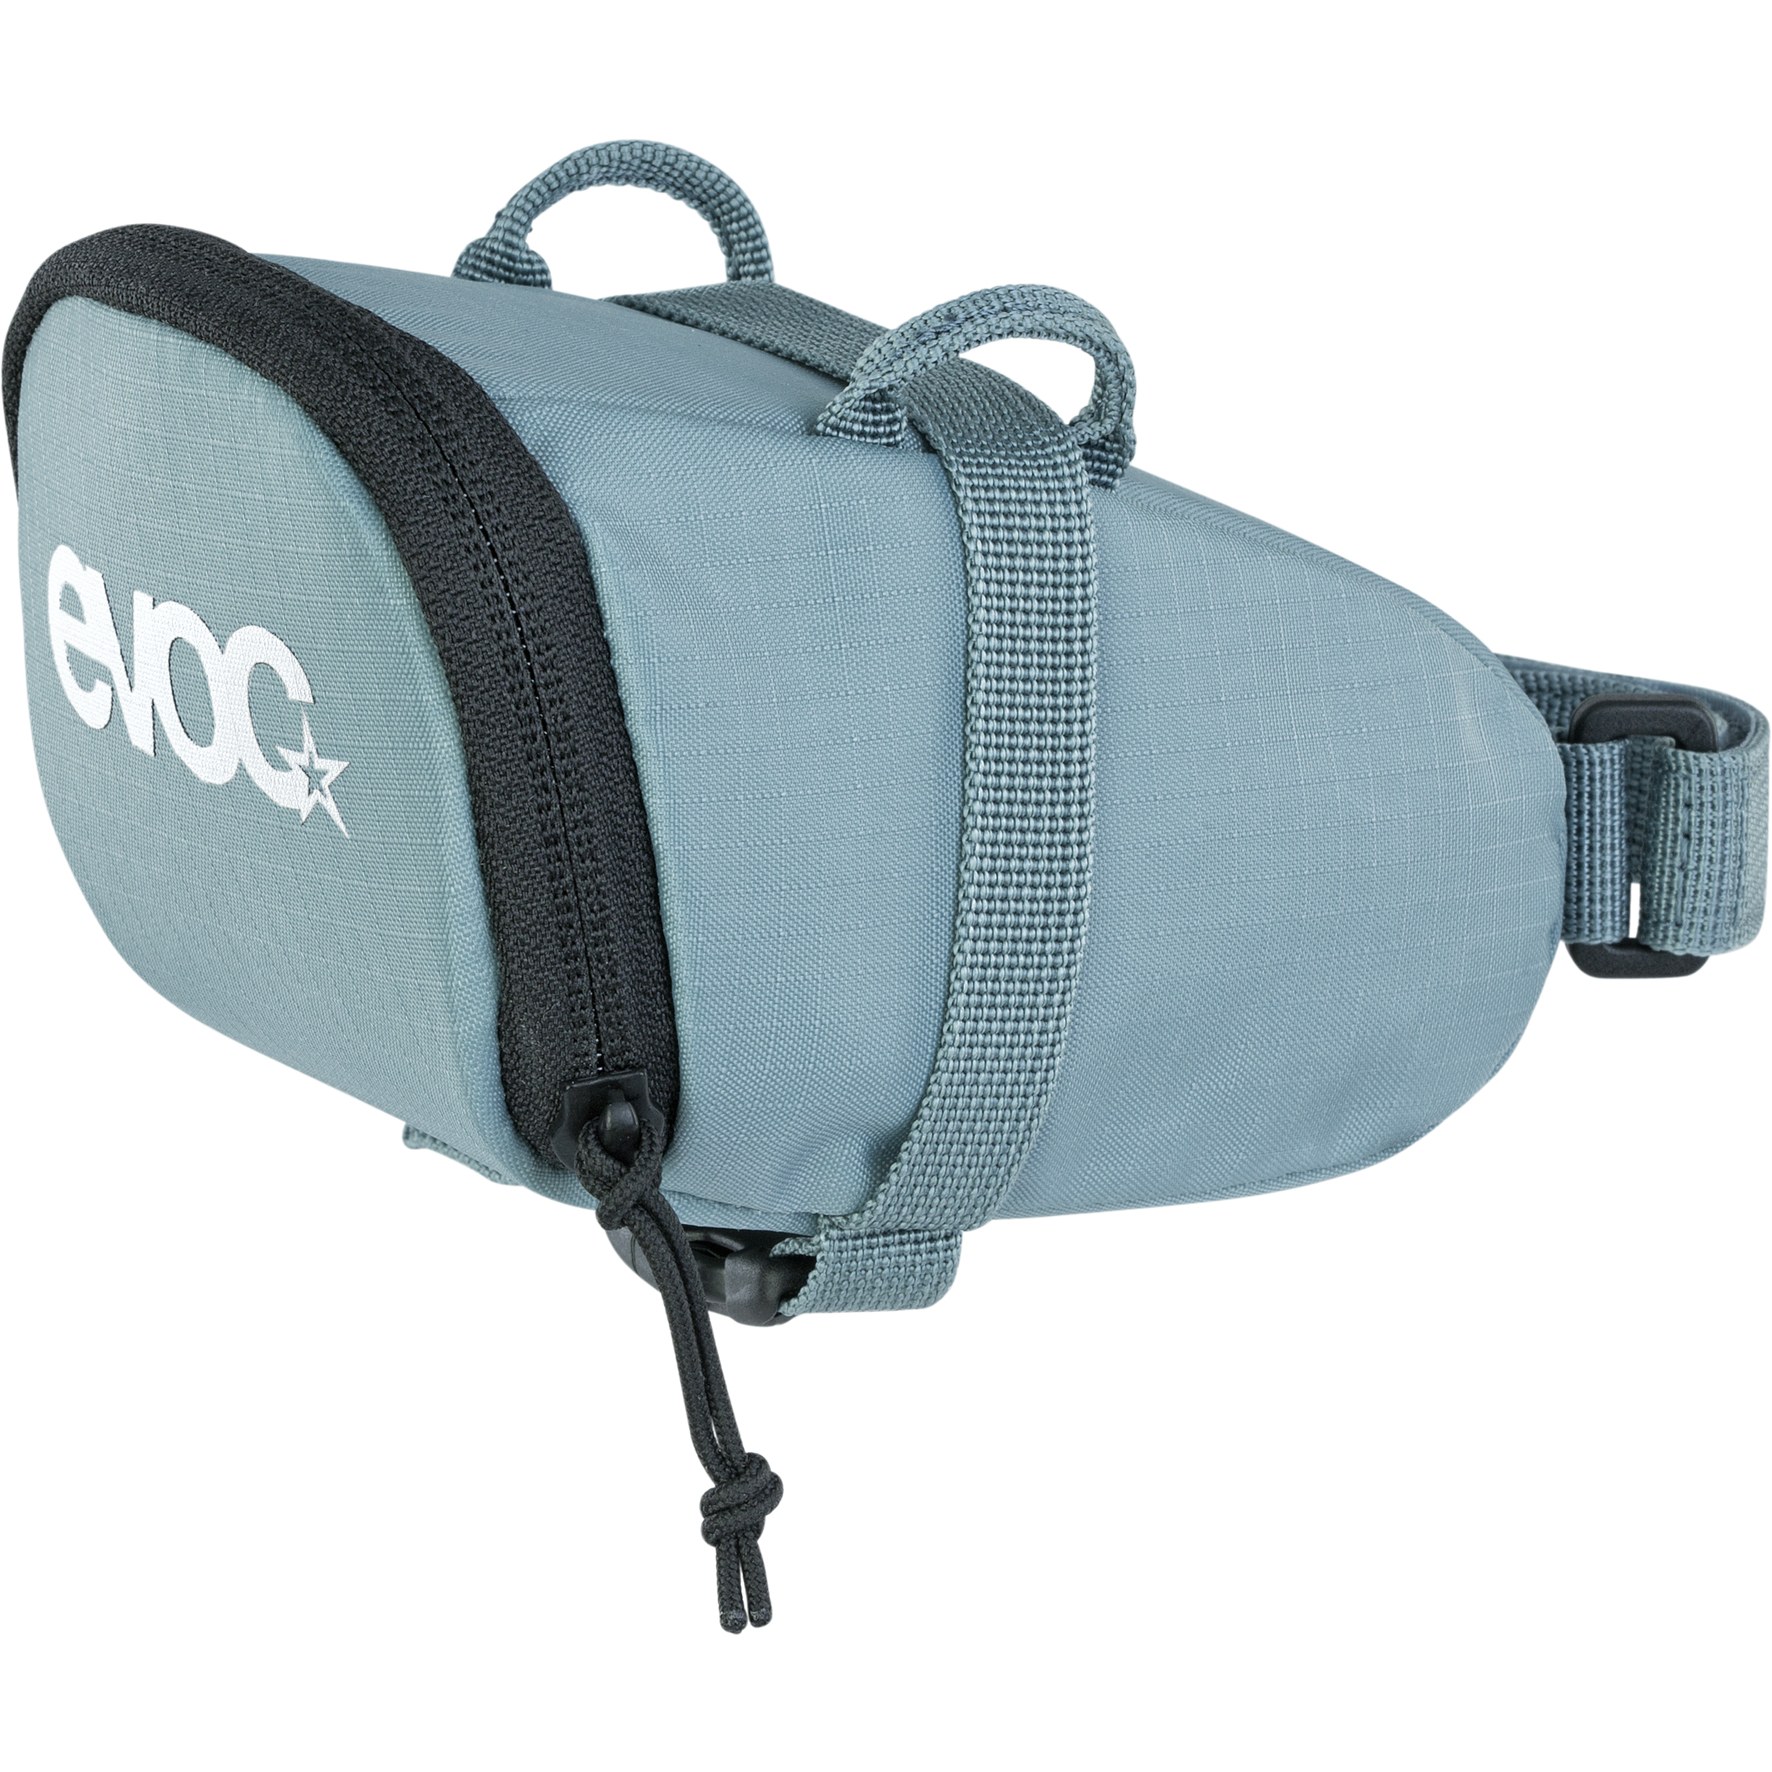 Produktbild von EVOC Seat Bag 0.7L Satteltasche - Steel